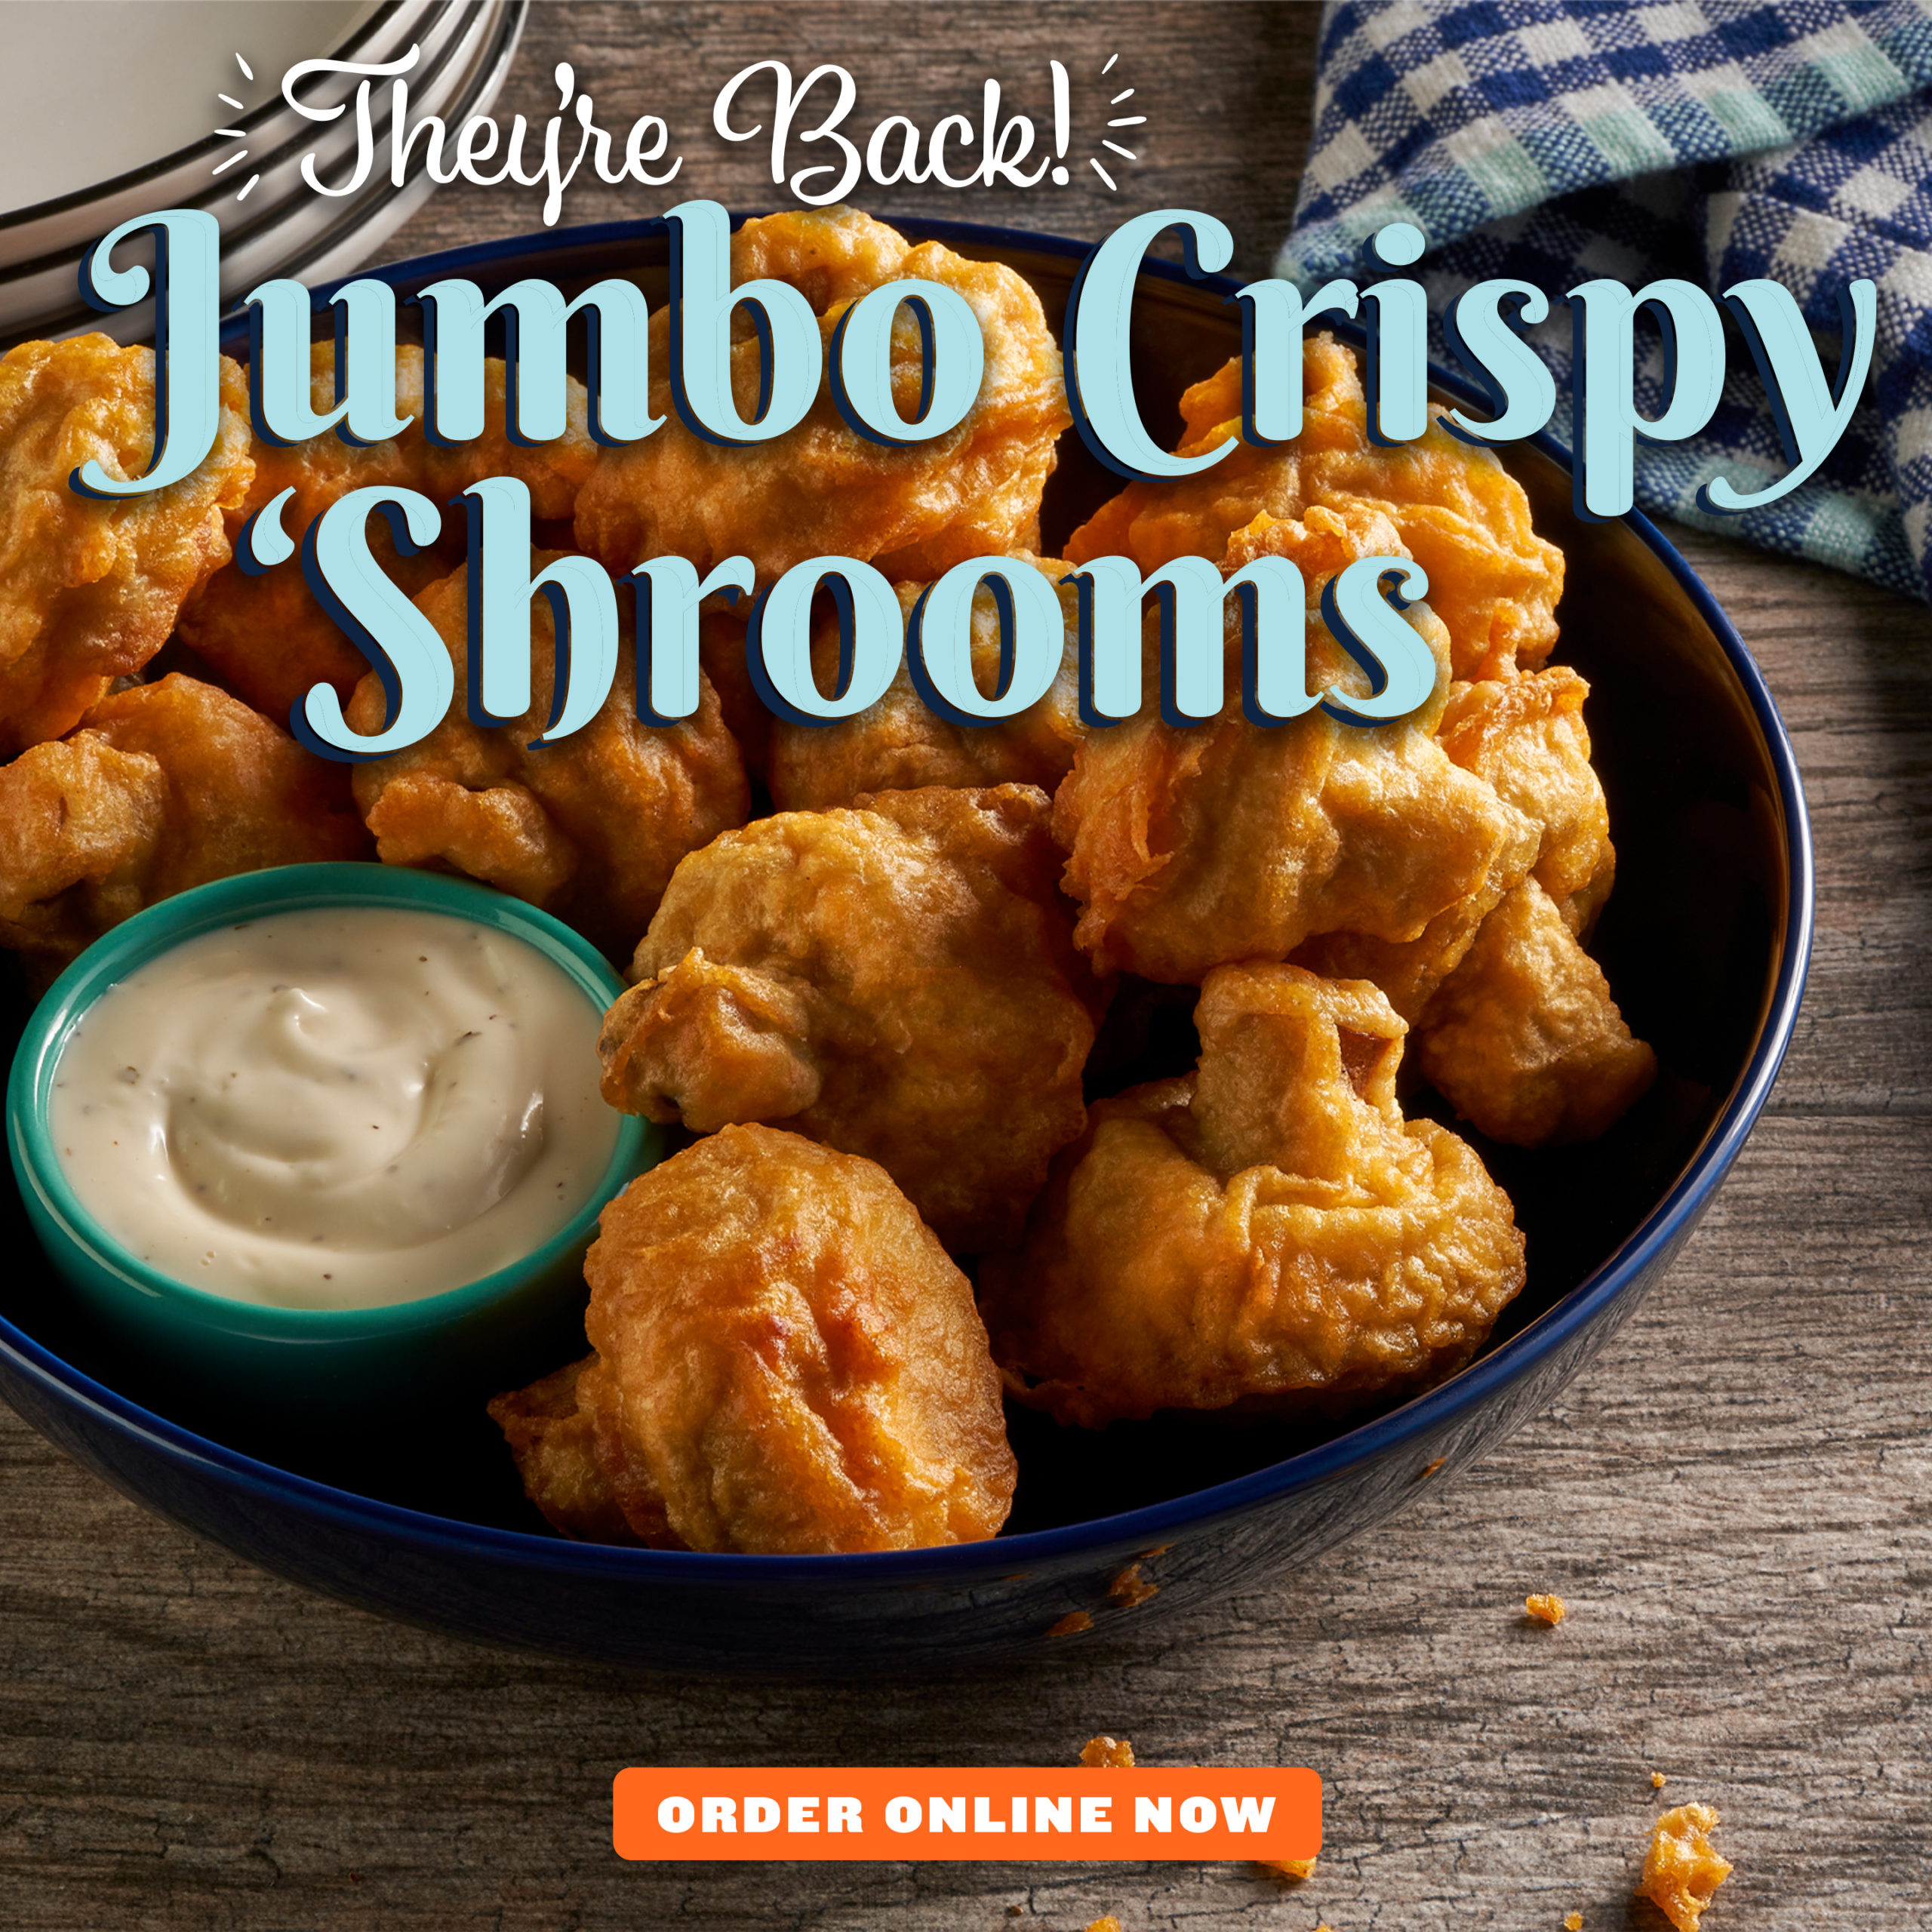 Jumbo Crispy 'Shrooms are Back!